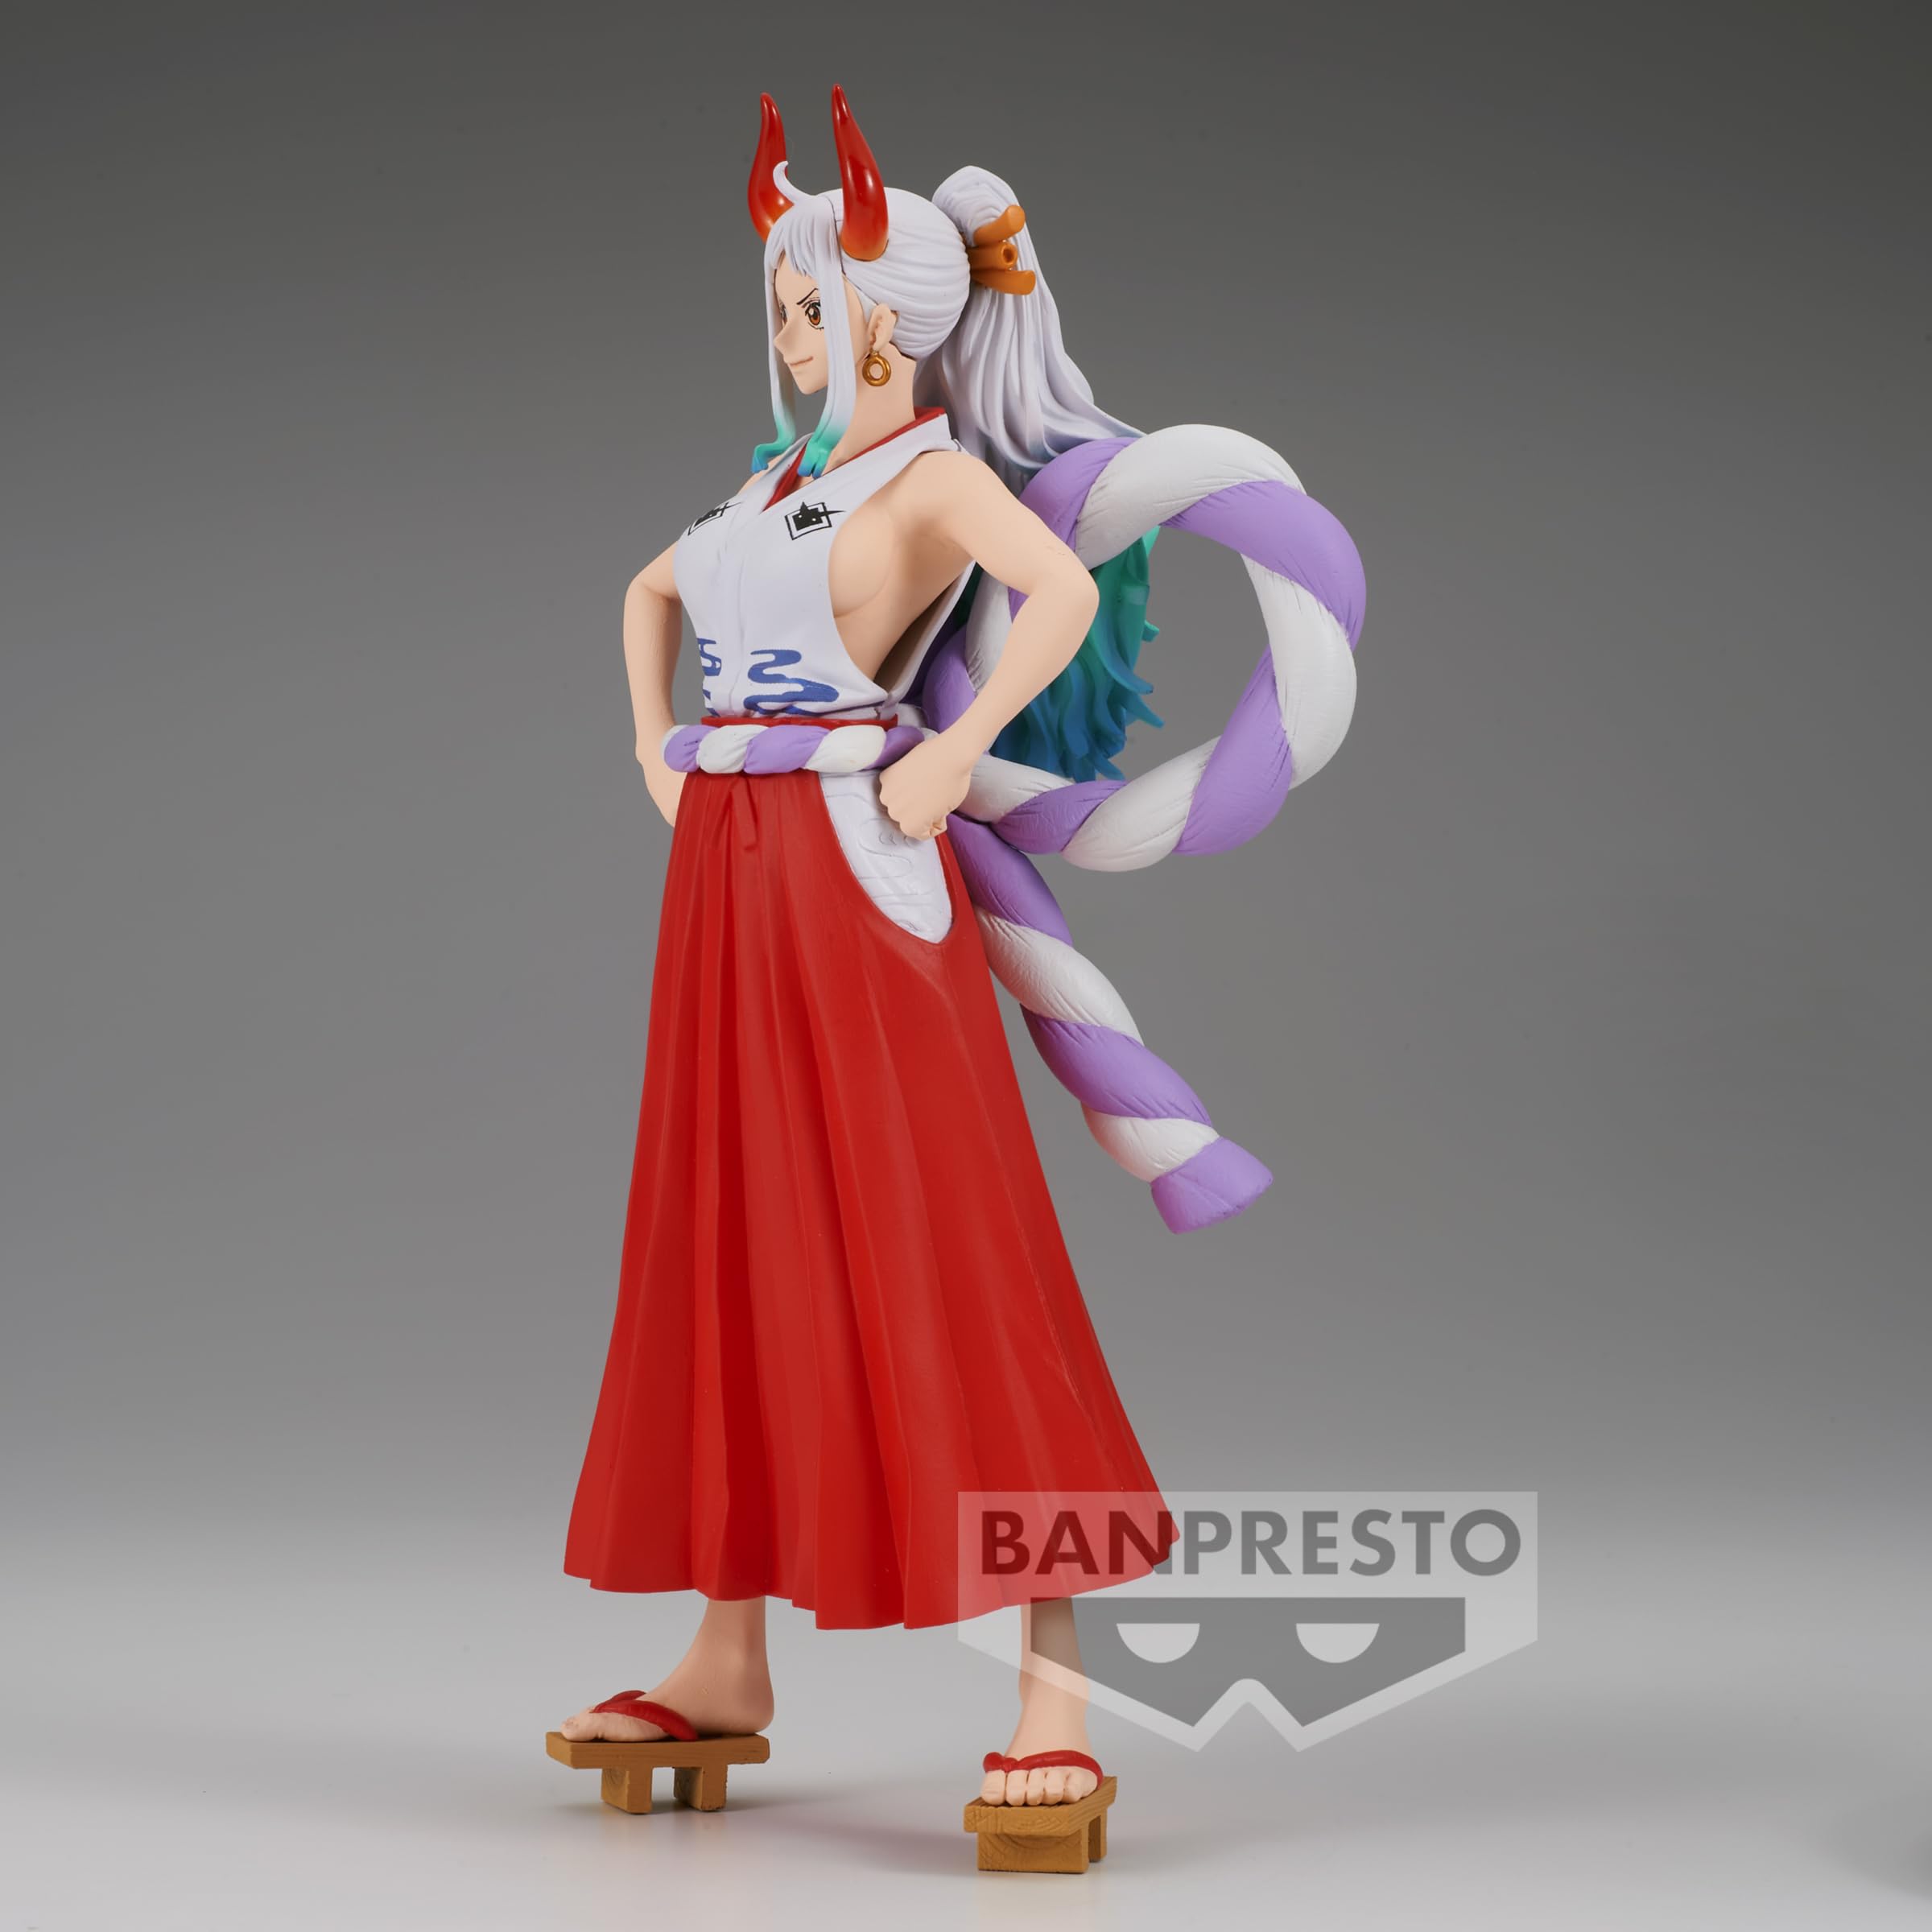 Banpresto - One Piece - The Yamato, Bandai Spirits King of Artist Figure